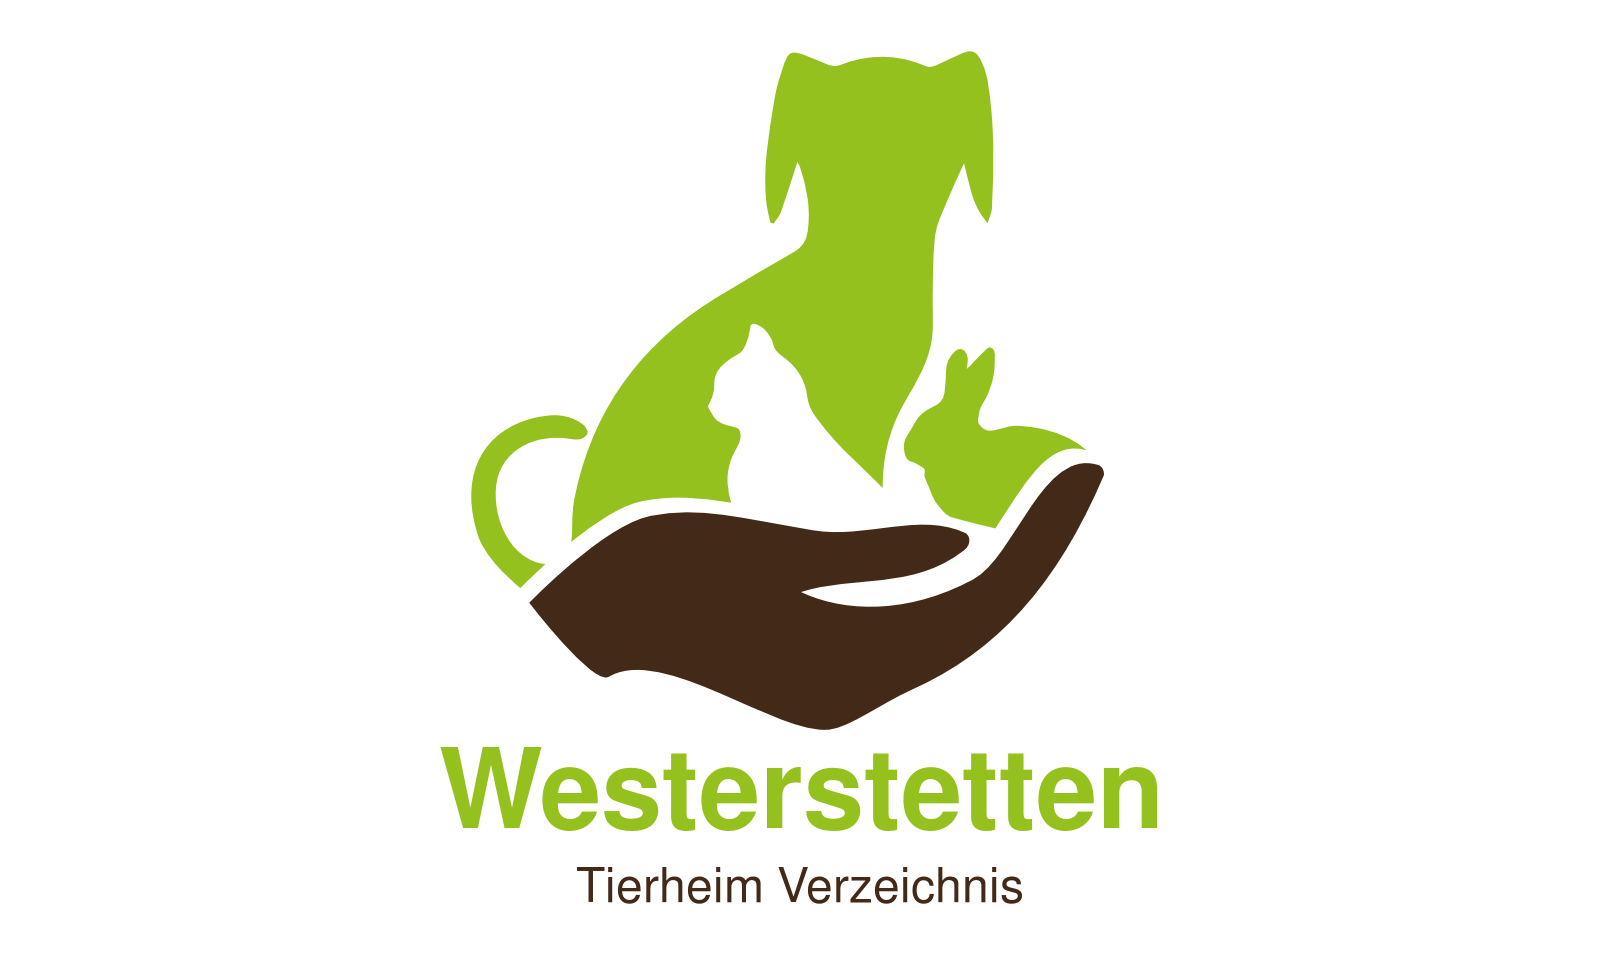 Tierheim Westerstetten